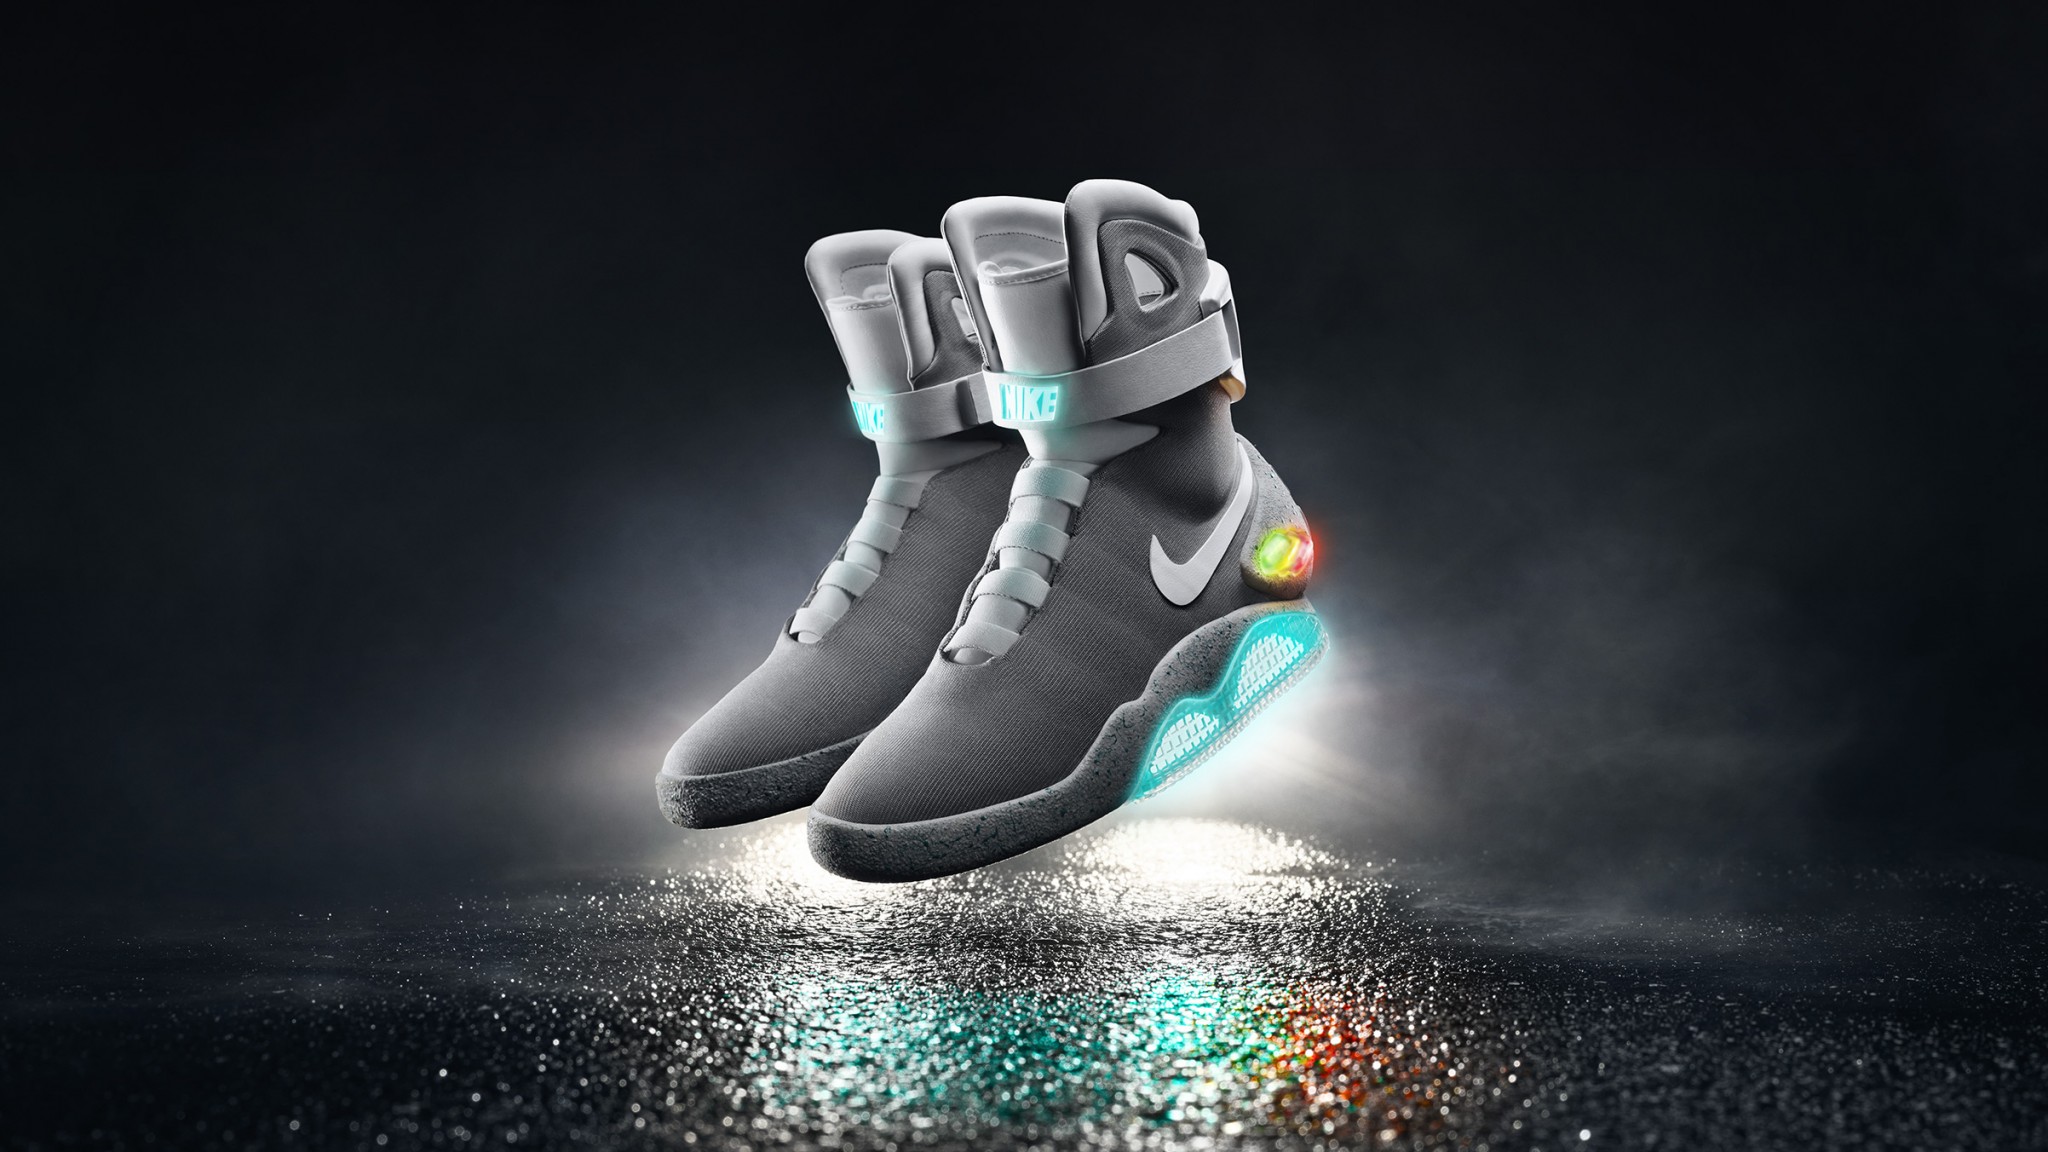 2015-Nike-Mag-02_original